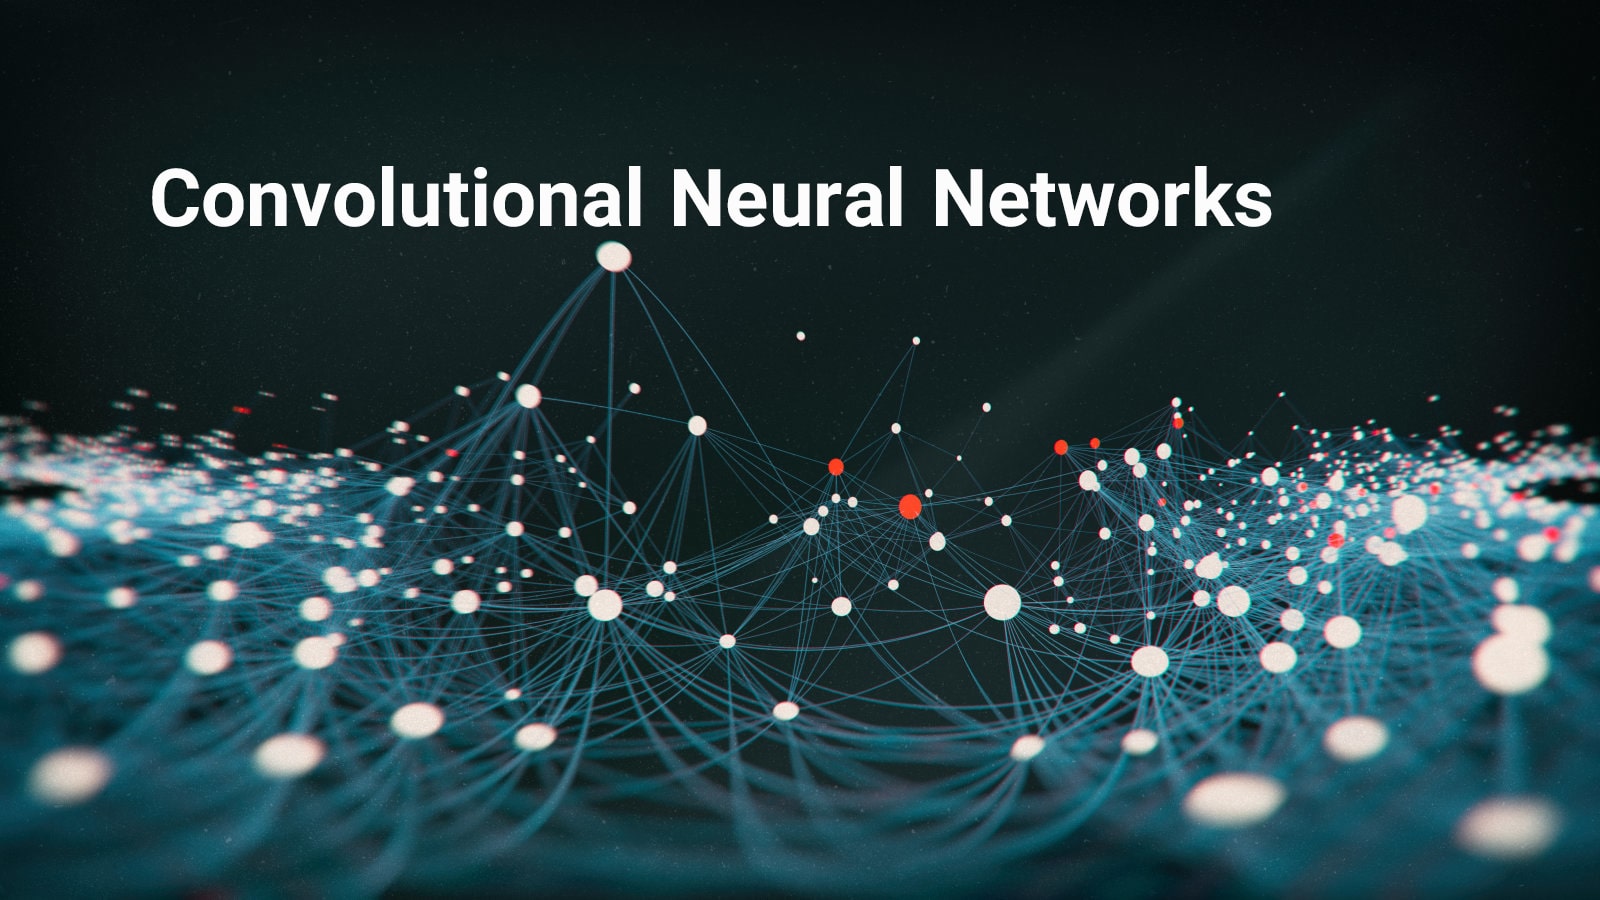 فیلم-شبکه-عصبی-کانولوشن-چیست-شبکه-عصبی-کانولوشنی-چیست-تعریف-ساختار-شبکه-عصبی-کانولوشن-تفاوت شبکه-عصبی-کانولوشن-با-پرسپترون‌-های-چندلایه-هم-رویش